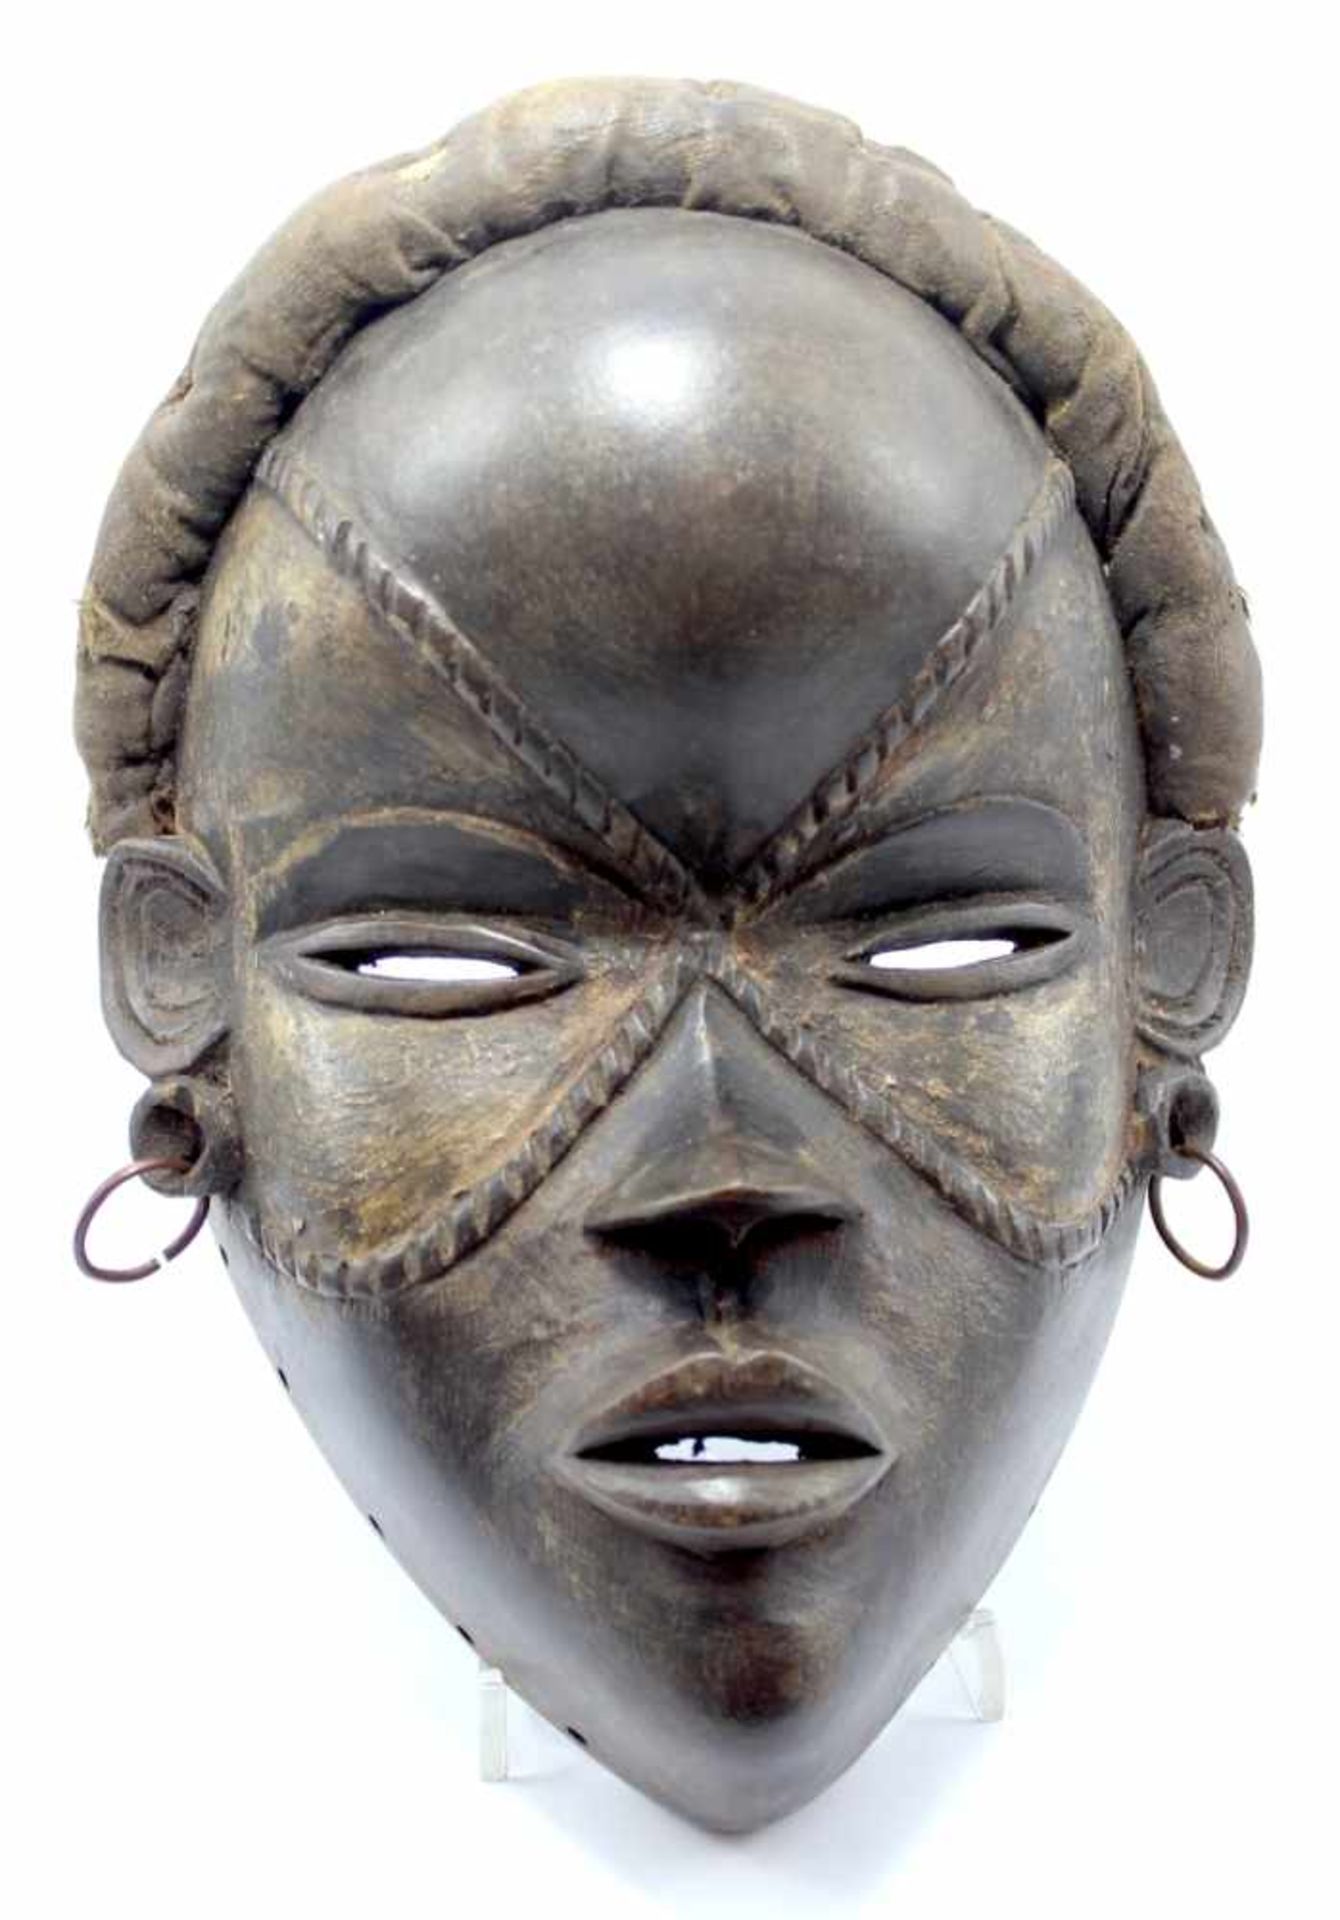 Maske - Dan Liberia braunes Holz, Schlitzaugen, Gesichtstattoos, Messingohrringe, Altersspuren, Höhe